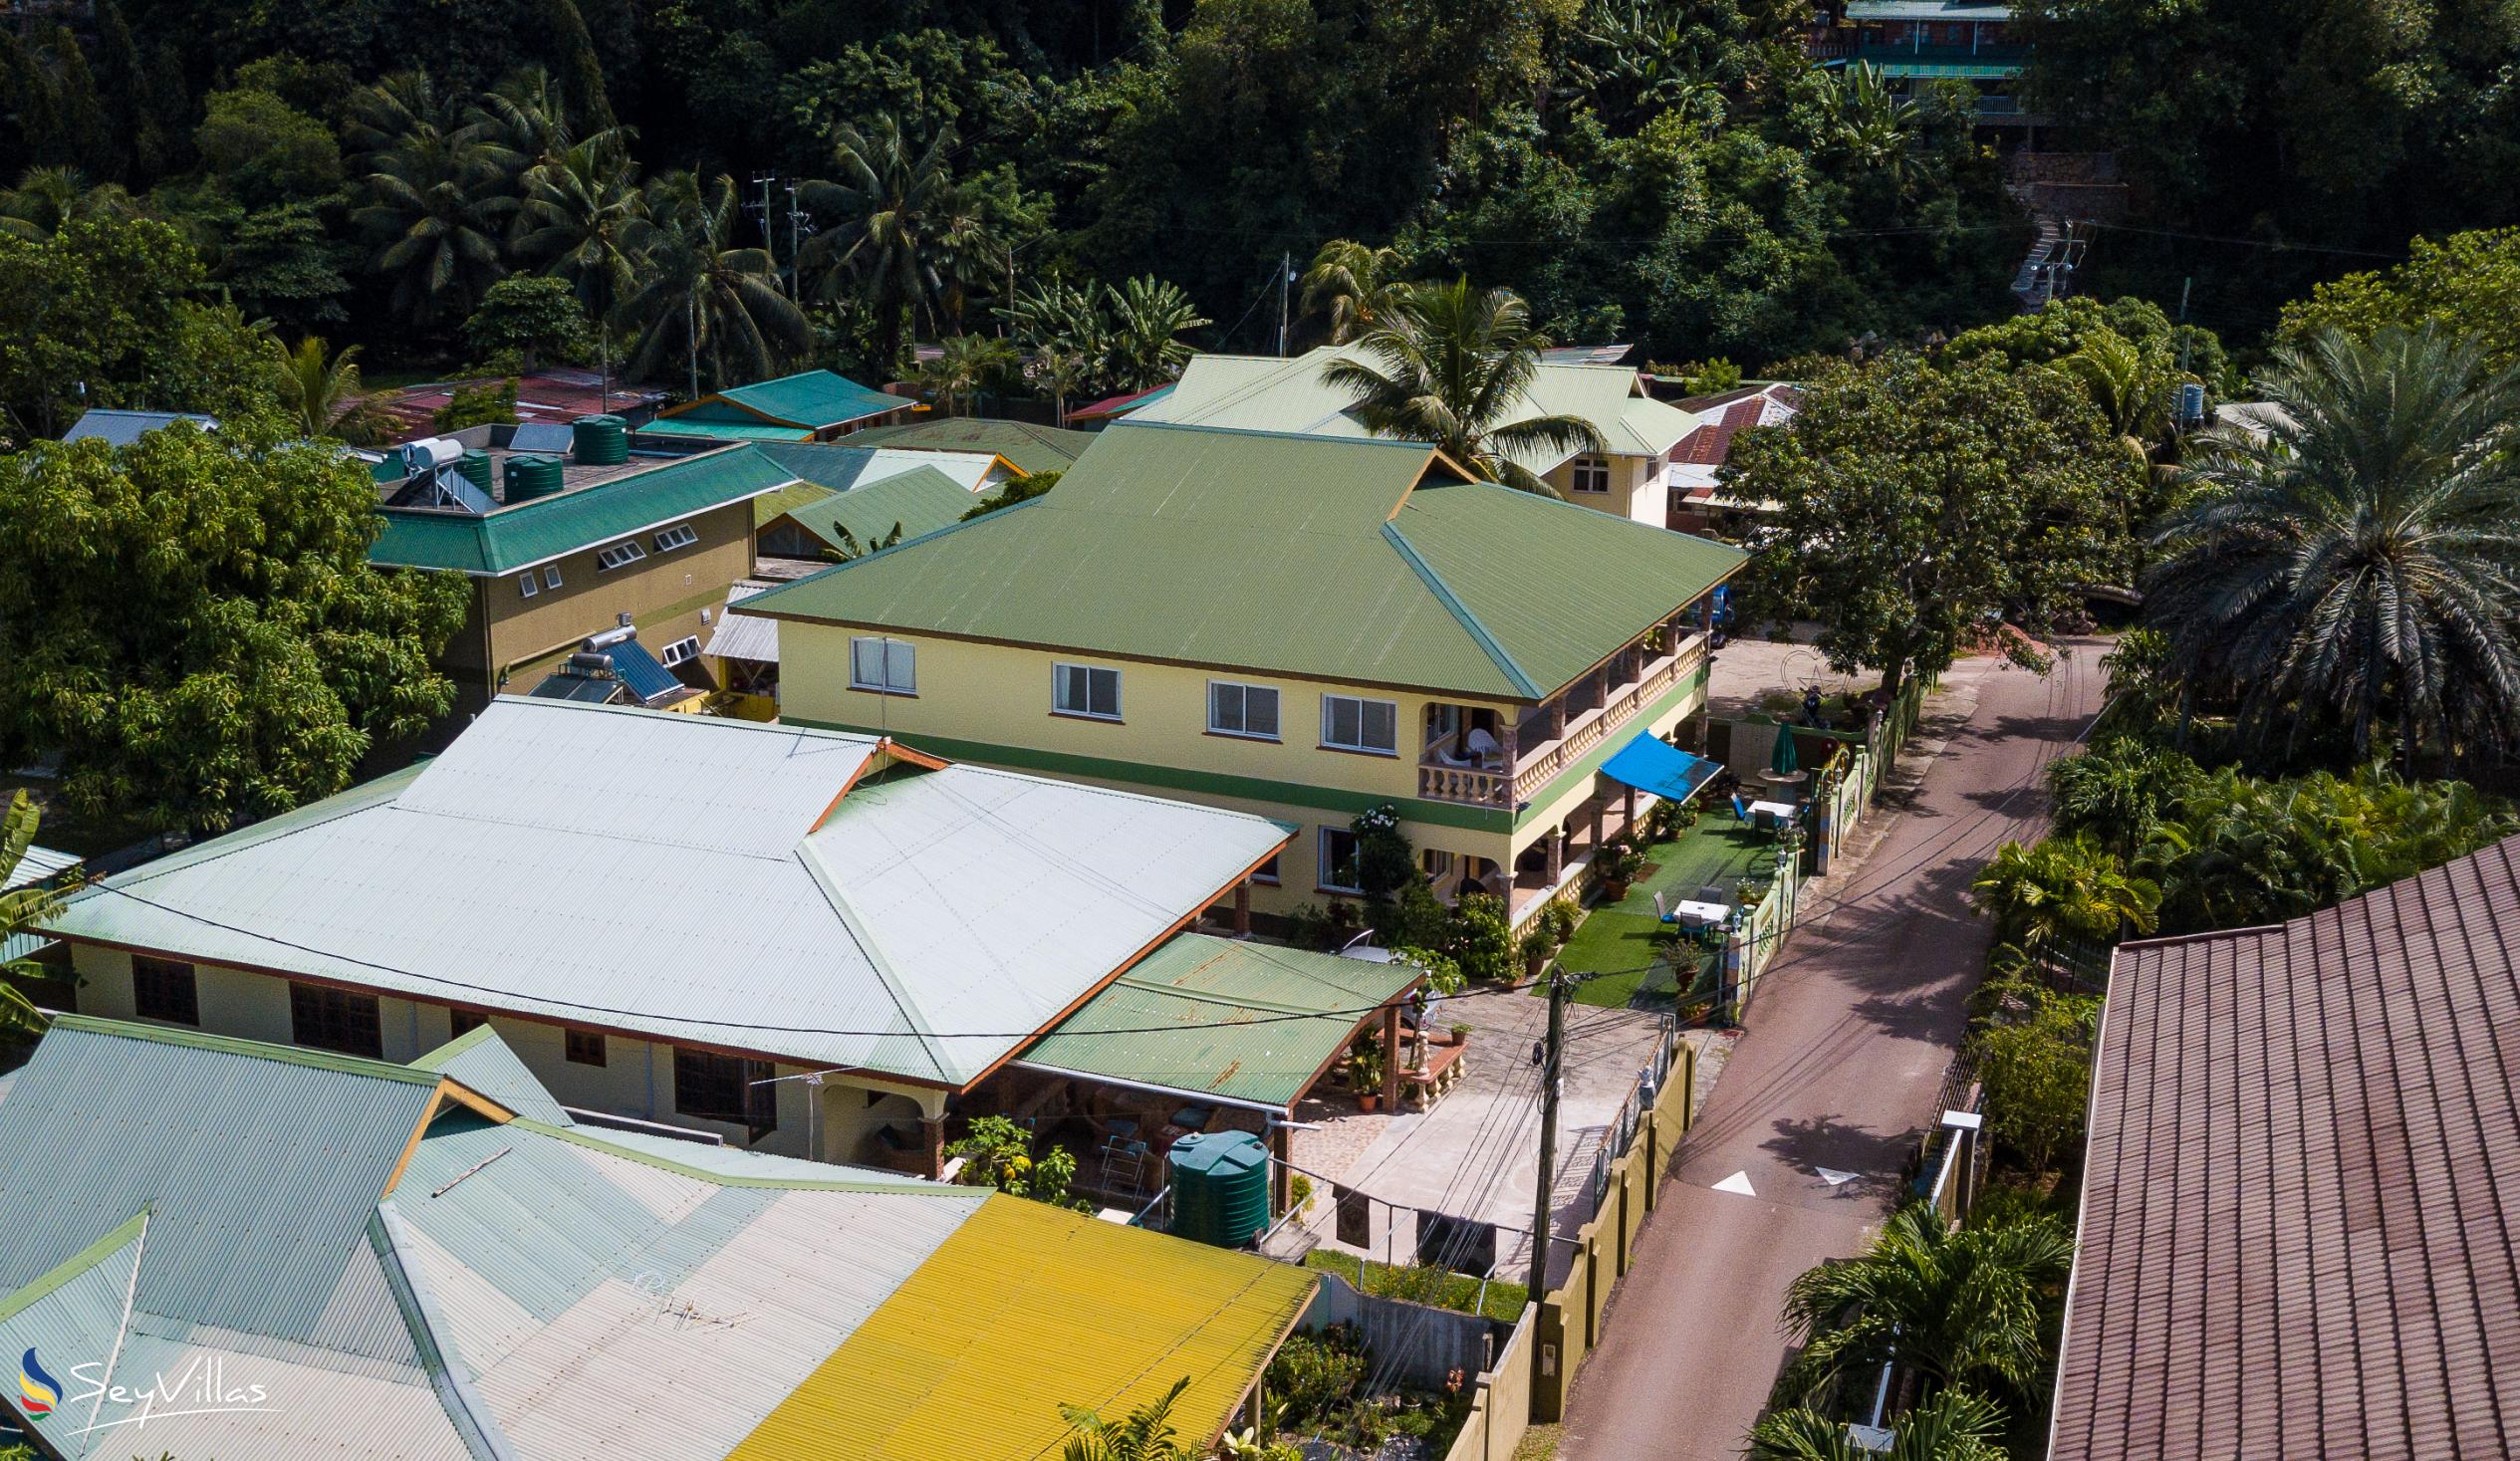 Foto 27: Villa Bananier - Aussenbereich - Praslin (Seychellen)